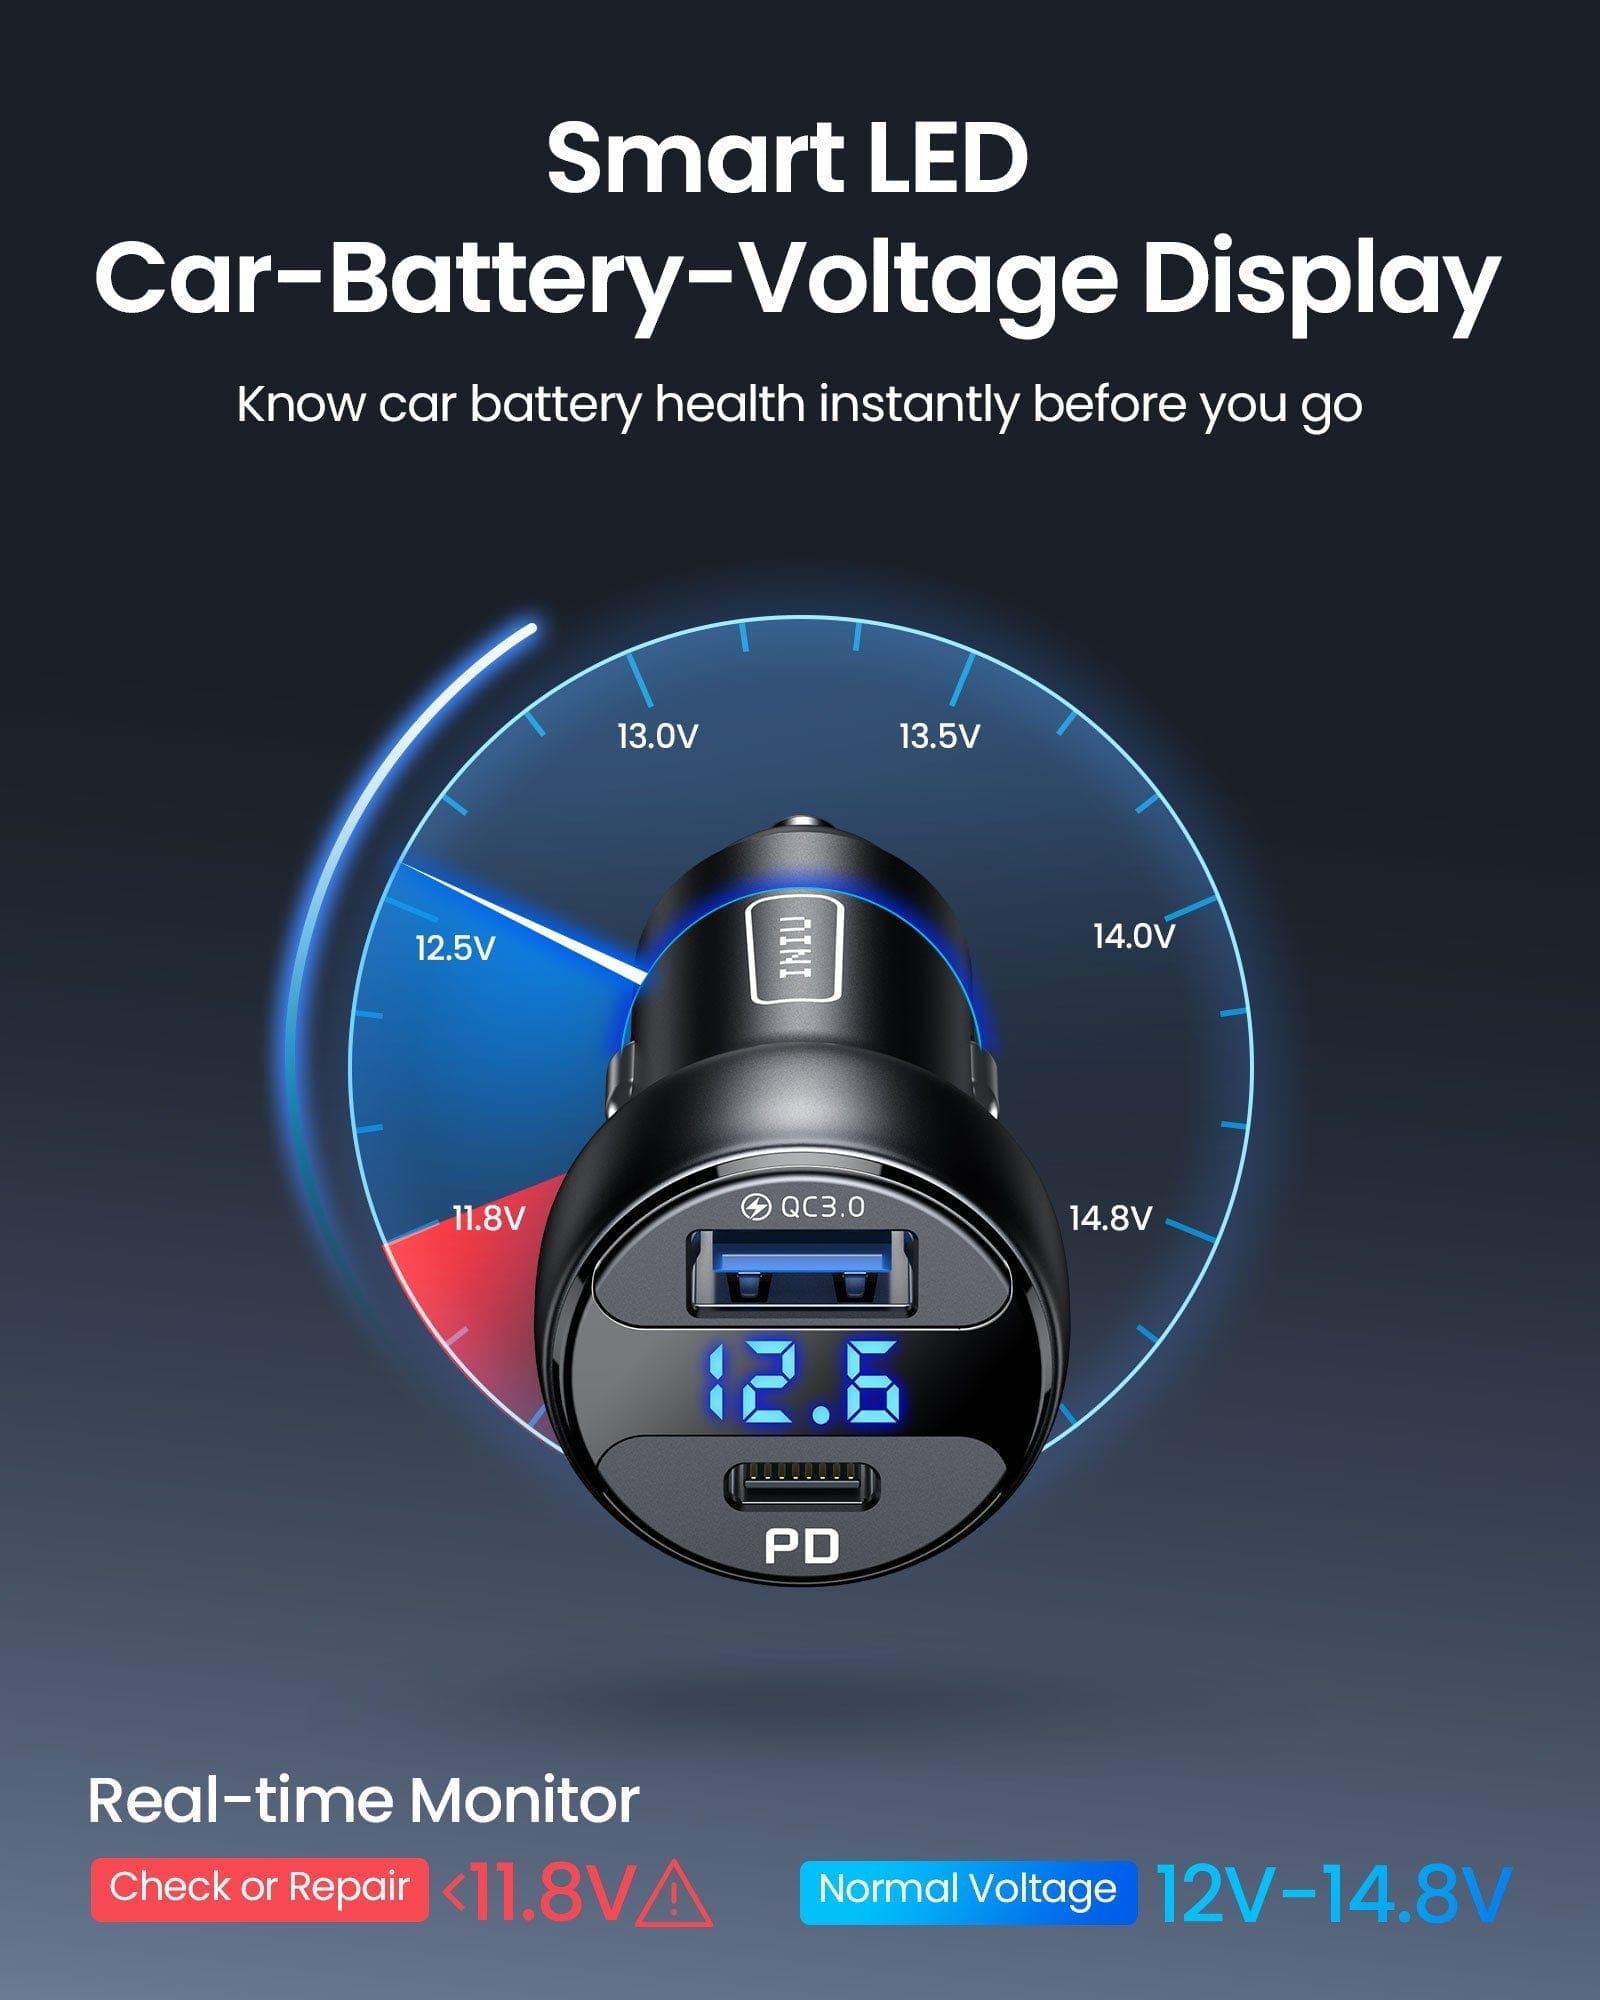 Smart LED Car-Battery-Voltage Display